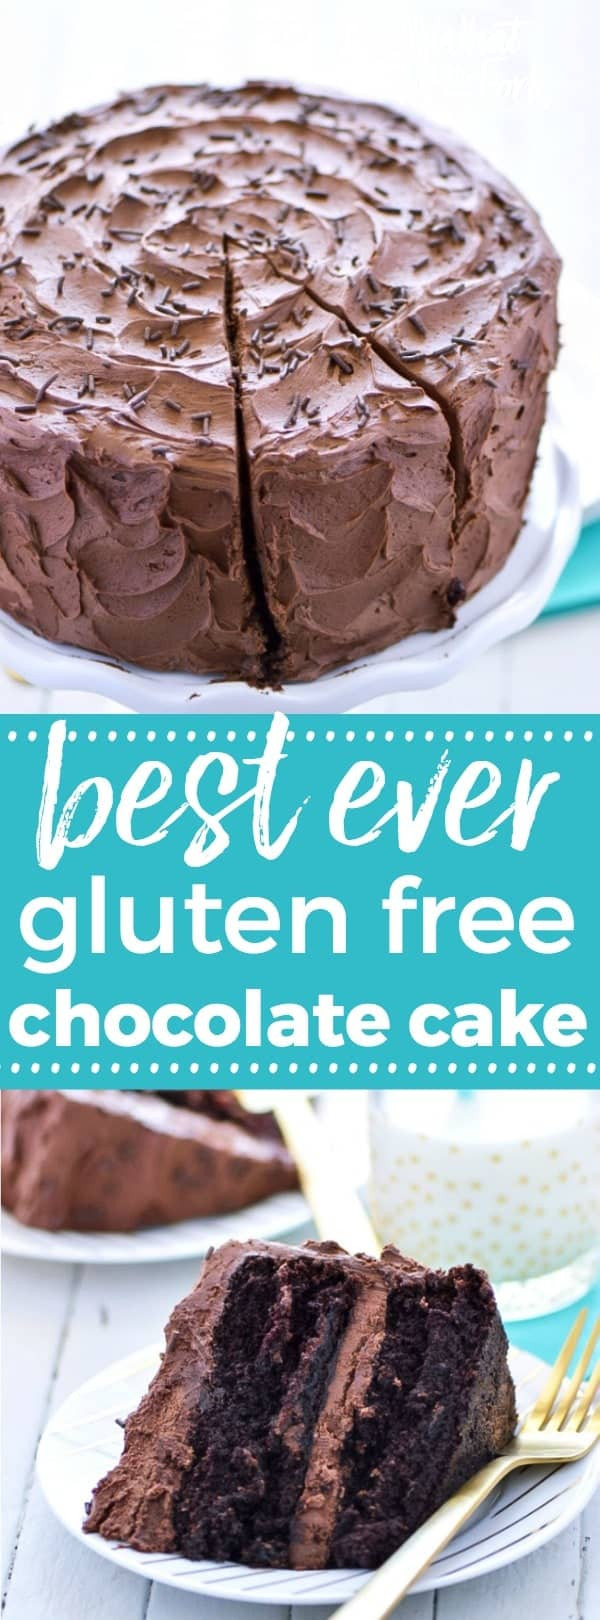 Gluten Free Chocolate Recipes
 The Best Gluten Free Chocolate Cake Recipe What the Fork